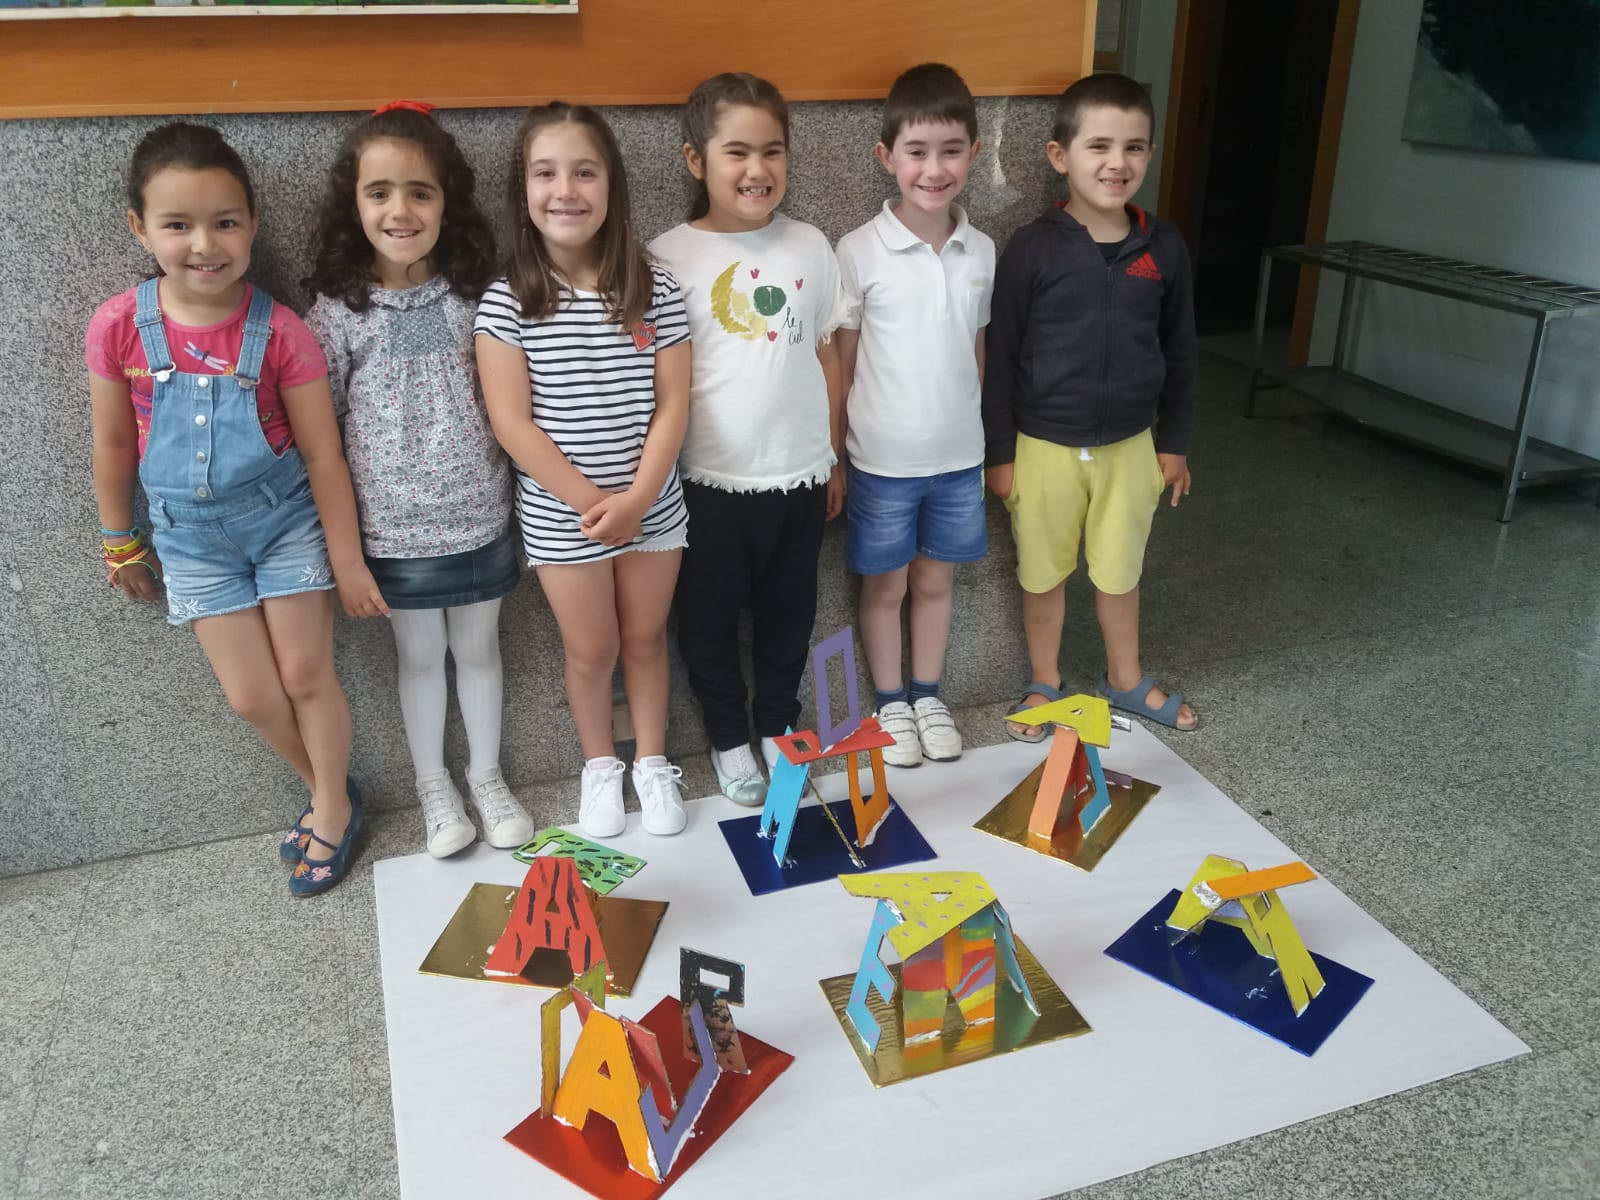 Los niños y niñas del obradoiro de arte infantil exponen sus trabajos realizados desde el mes de octubre